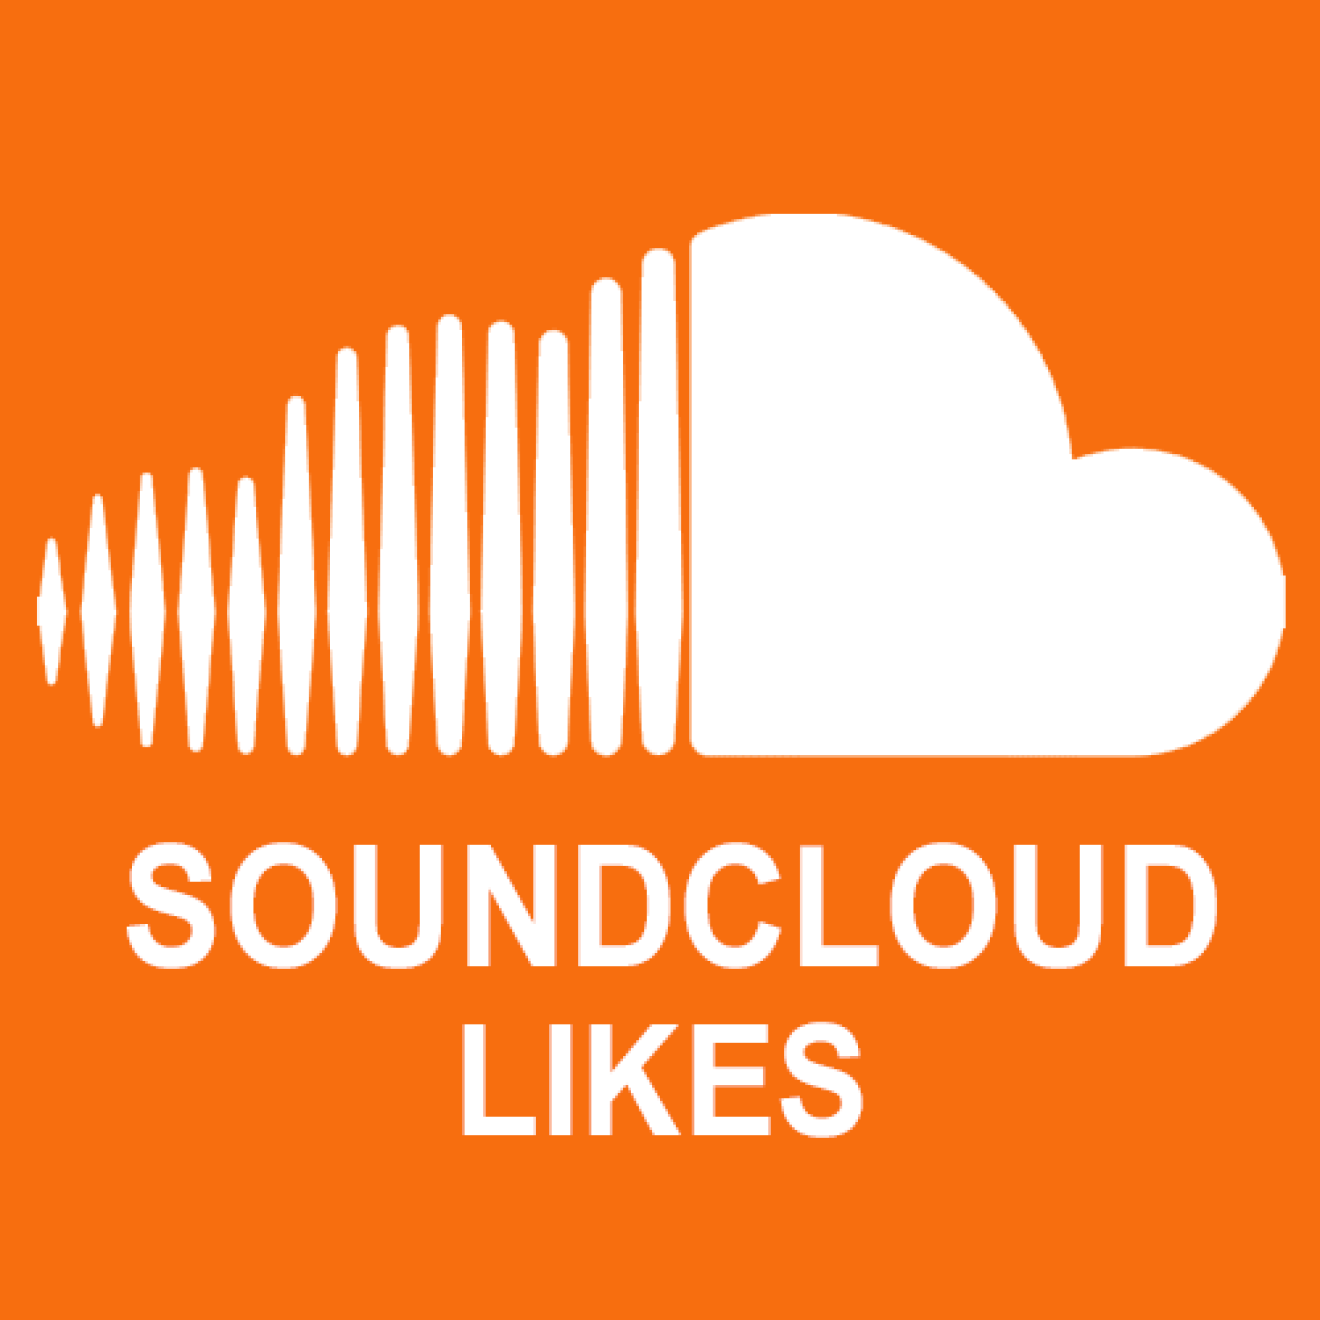 5000 Soundcloud Likes / Gefällt mir Angaben für Dich